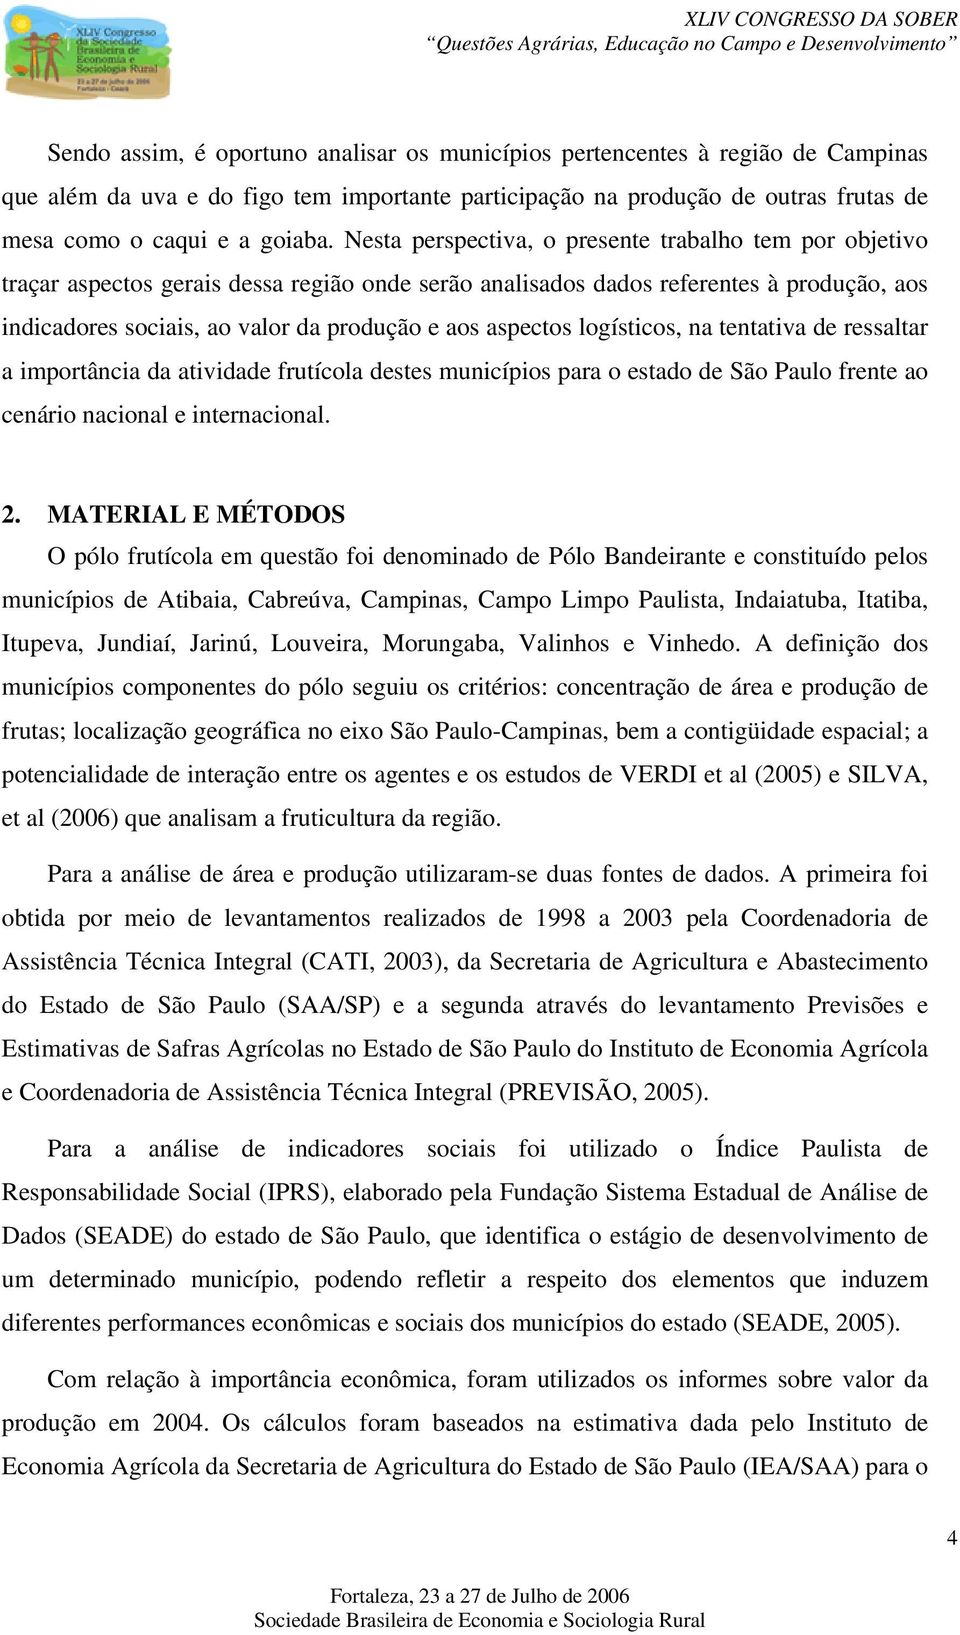 aspectos logísticos, na tentativa de ressaltar a importância da atividade frutícola destes municípios para o estado de São Paulo frente ao cenário nacional e internacional. 2.